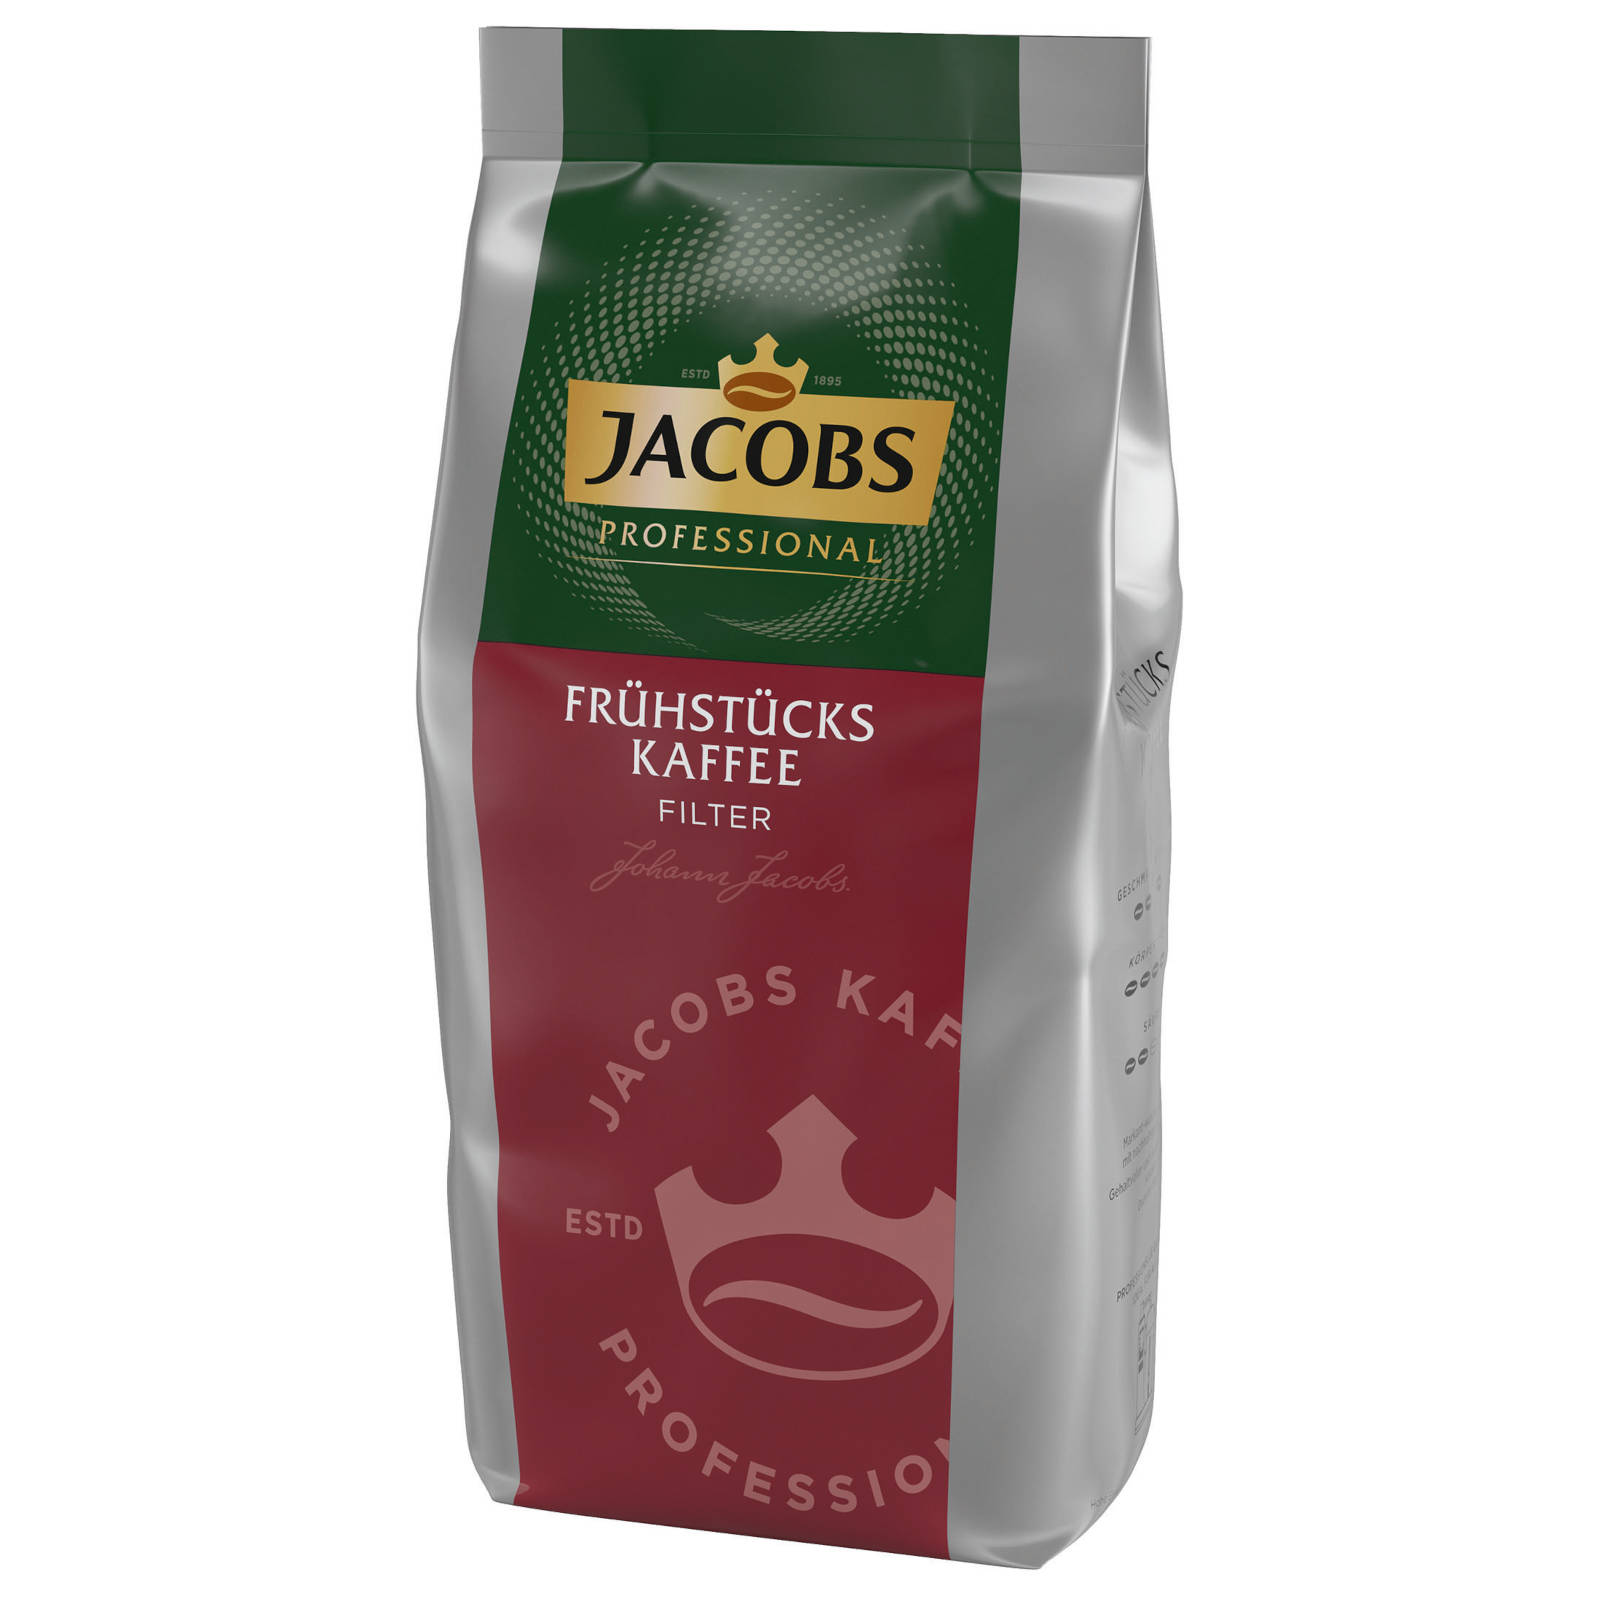 Filterkaffee Press) Professional kg JACOBS (Filter, 10x1 French Frühstückskaffee